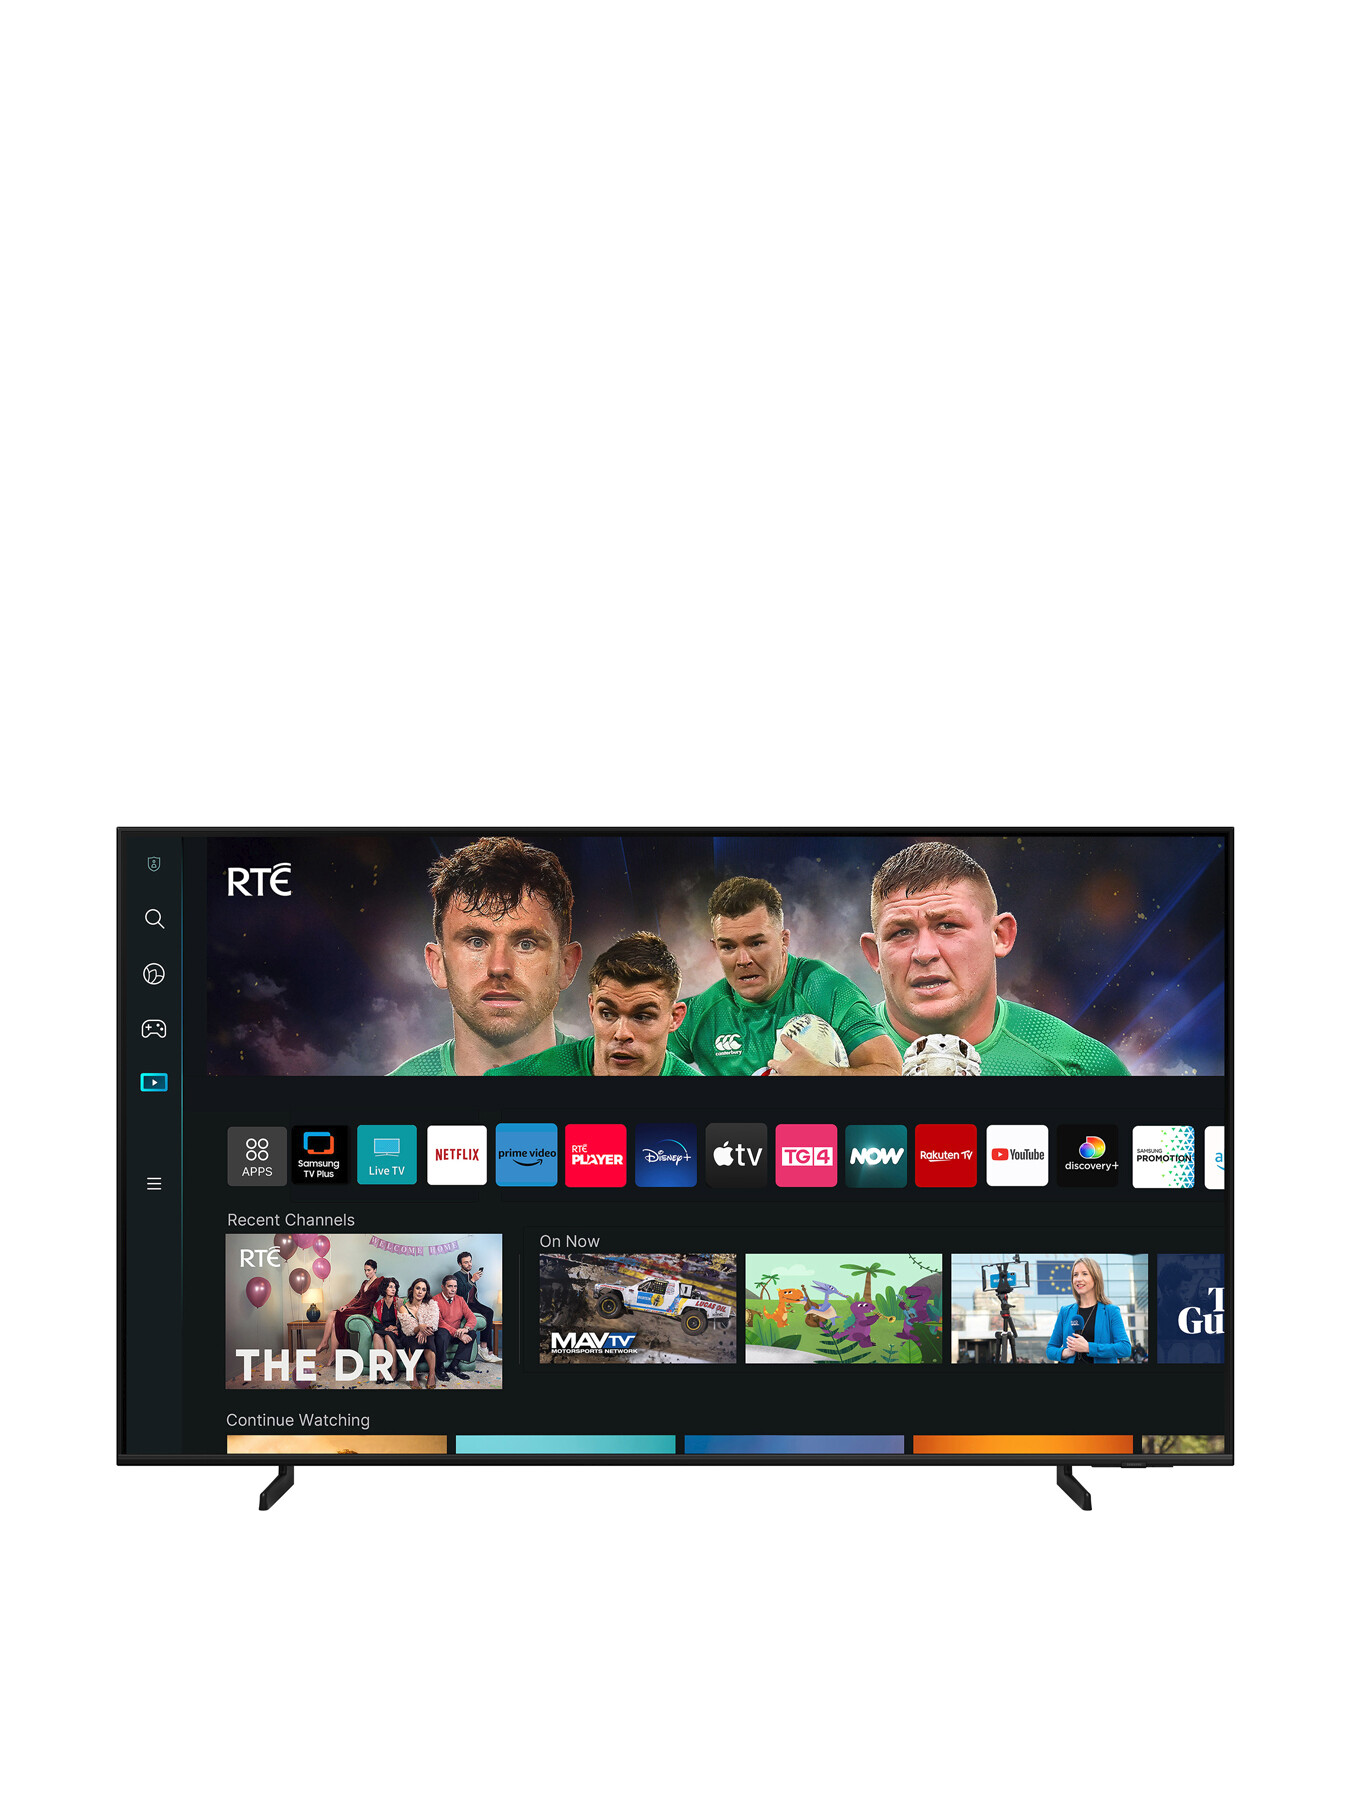 Samsung QE65Q60 QLED HDR 4k Smart TV 65 Inch (2023) | Fenwick